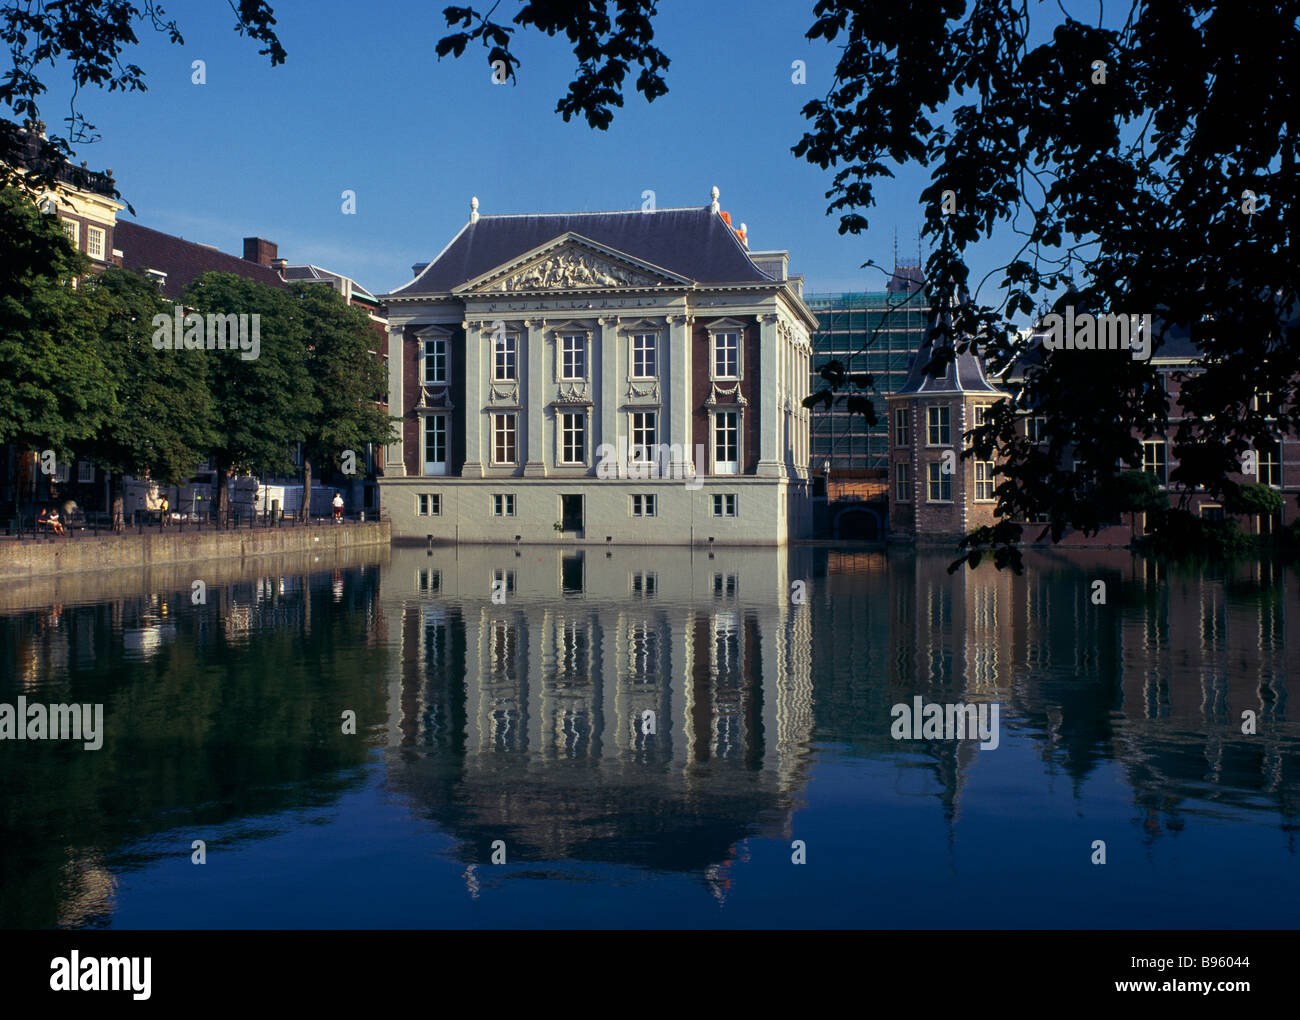 La Hollande, du Sud, de La Haye. Galerie d'art Mauritshuis reflétée dans l'eau en premier plan. Banque D'Images